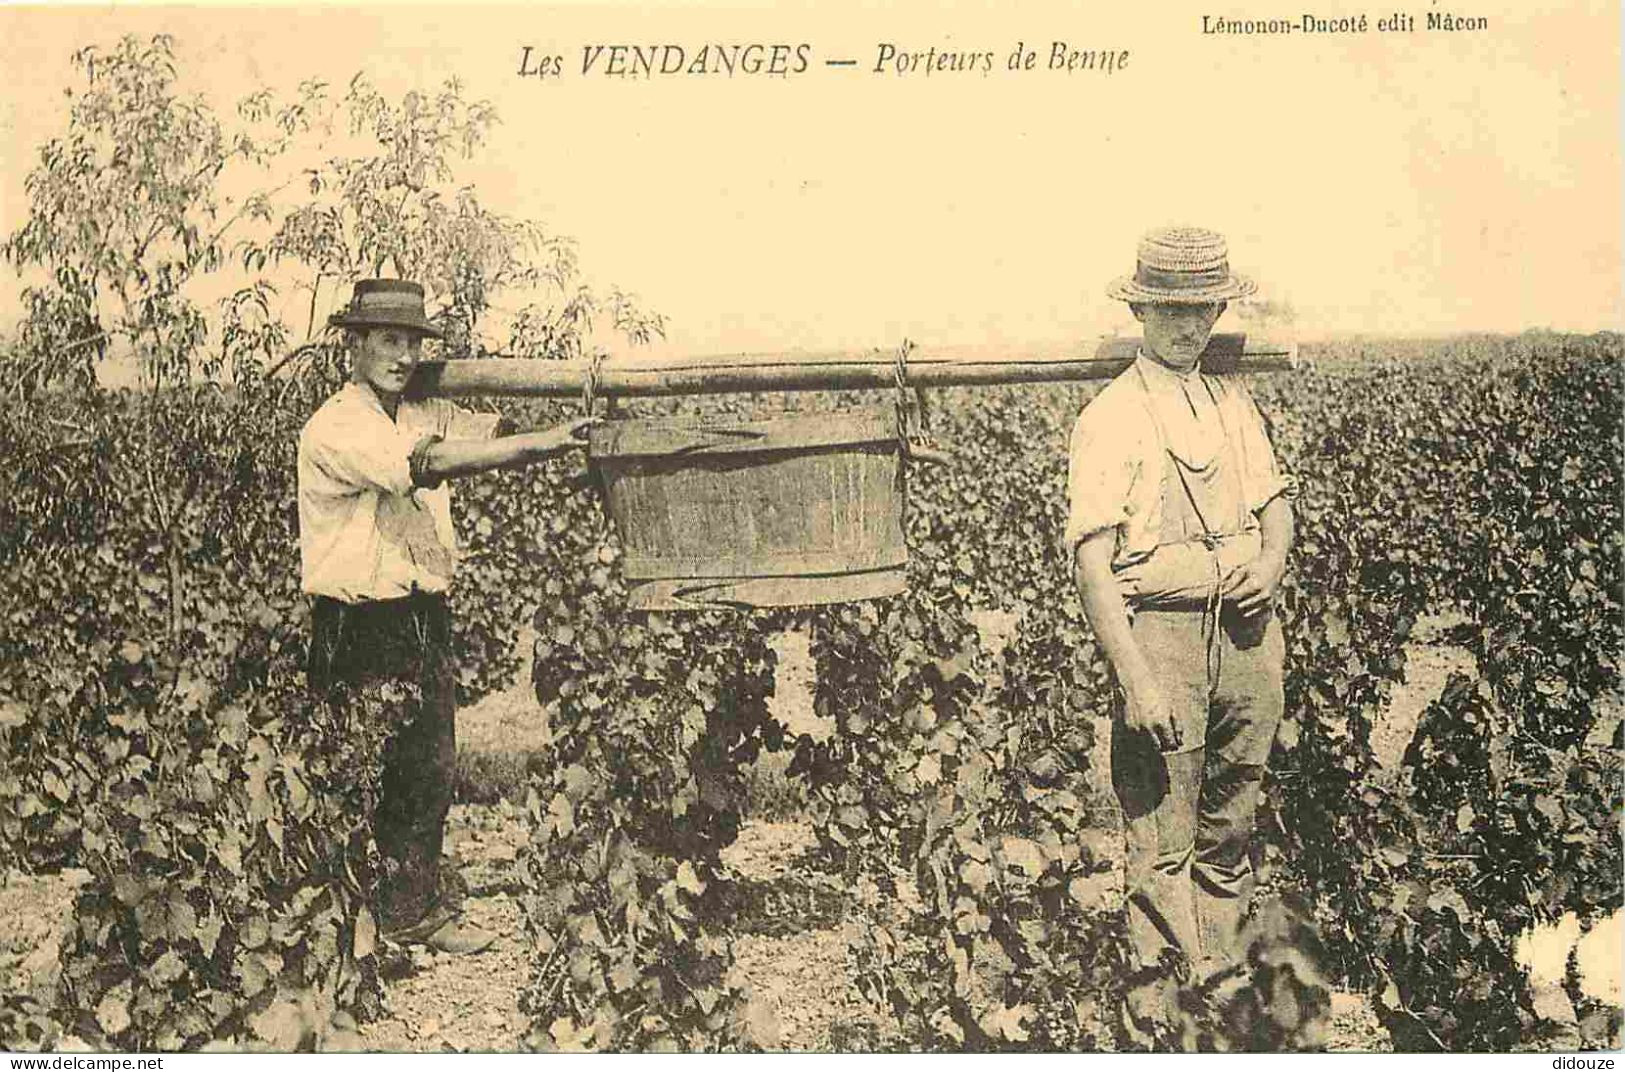 Reproduction CPA - Agriculture - Vigne - Les Vendanges - Porteurs De Benne - C'était La France - No 118 - CPM Format CPA - Weinberge